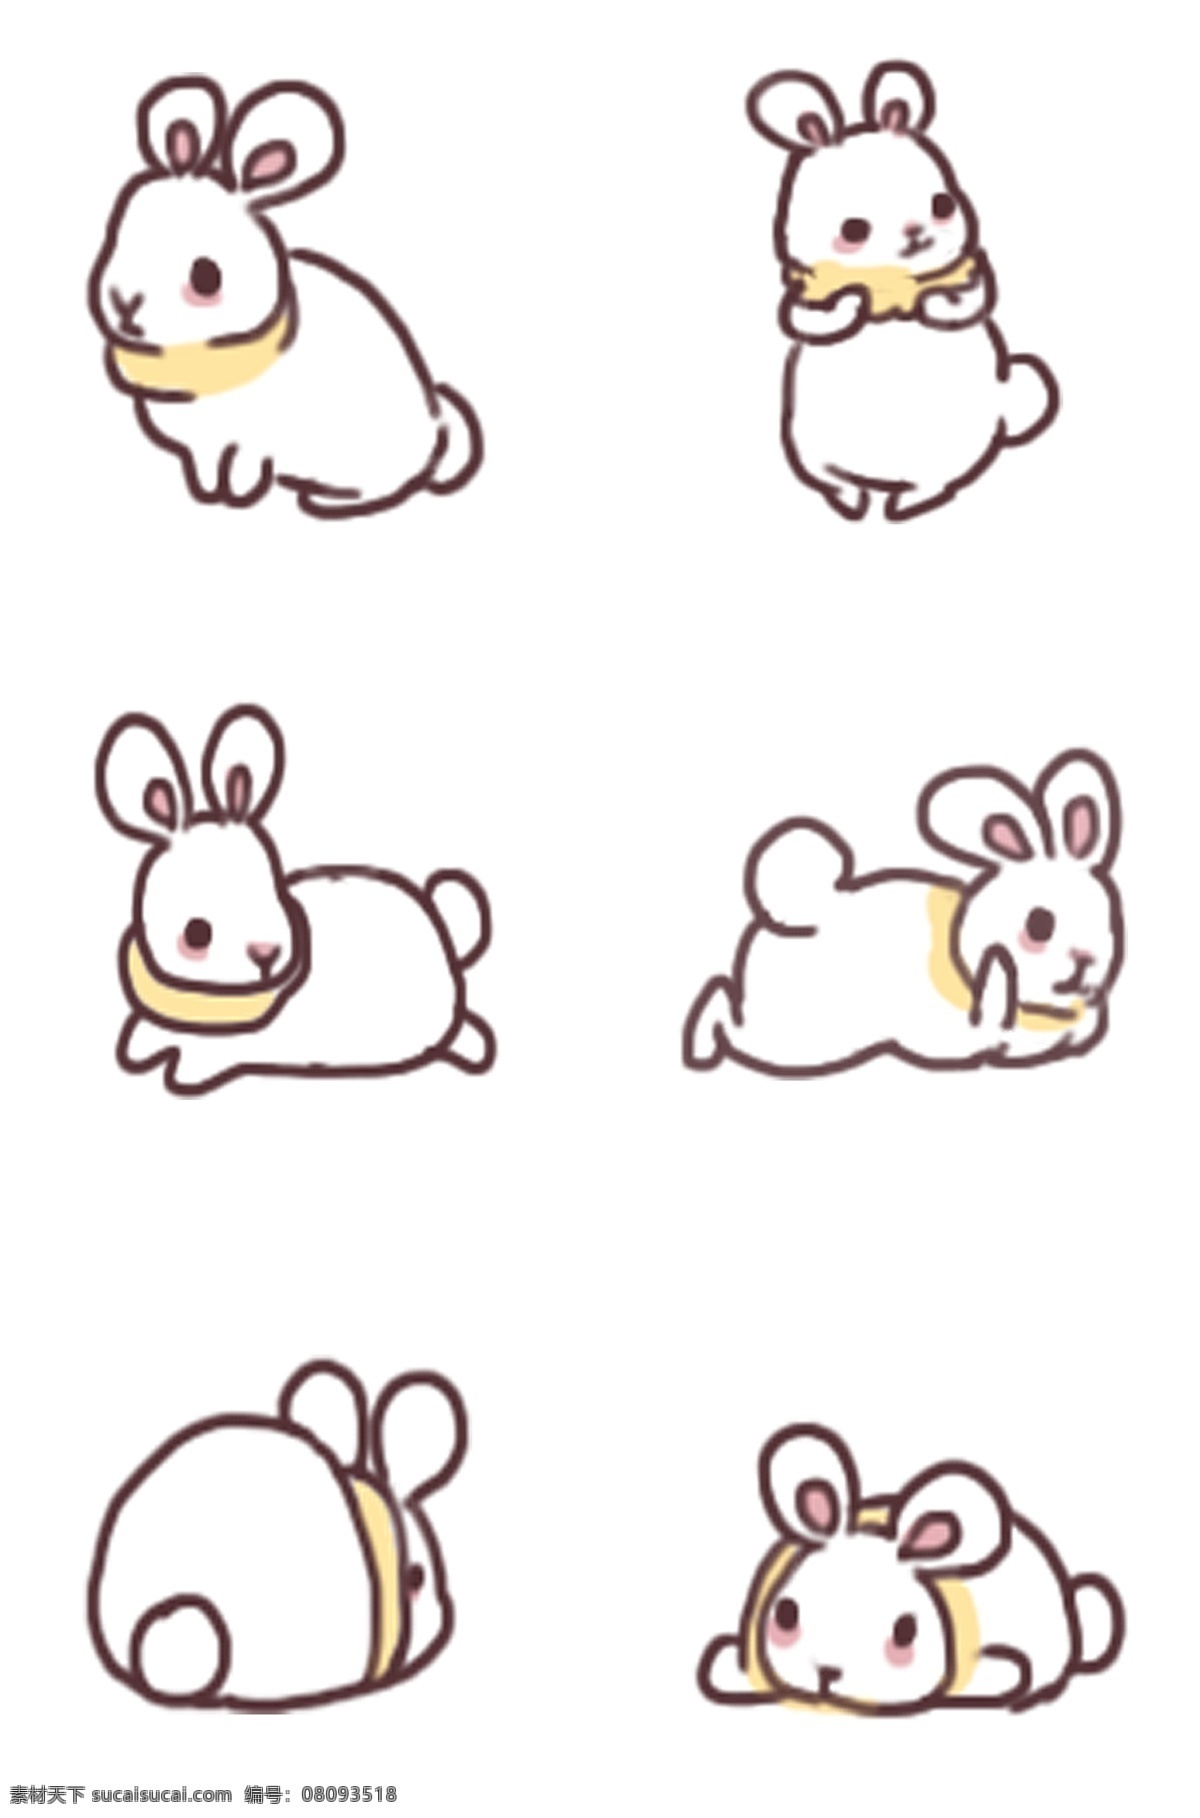 毛绒 小胖 卡通 兔子 思考的小兔子 可爱 手绘 动作 系列 丰富 表情 彩色 小 动物 简笔涂鸦